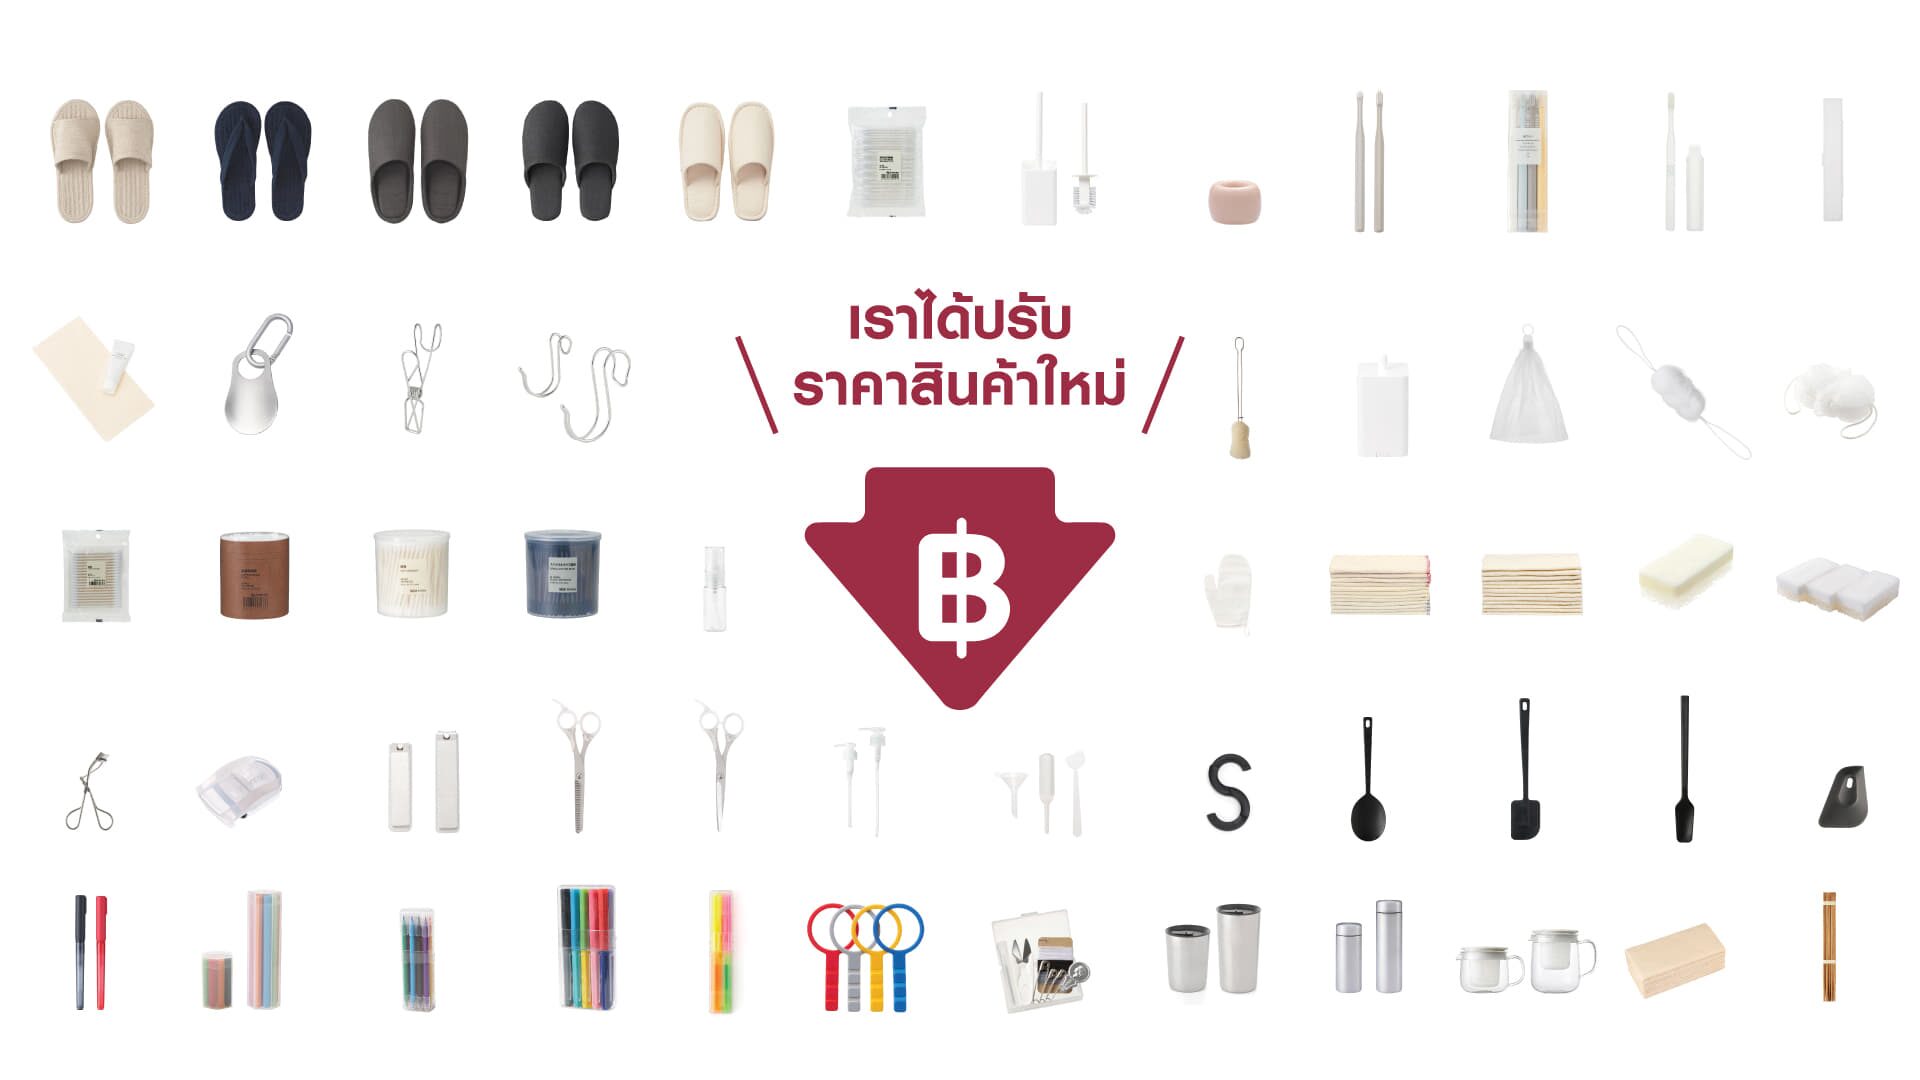 มูจิ ปรับราคาสินค้า 604 รายการ ให้คนไทยเข้าถึงสินค้าง่ายขึ้น ในราคาจับต้องได้